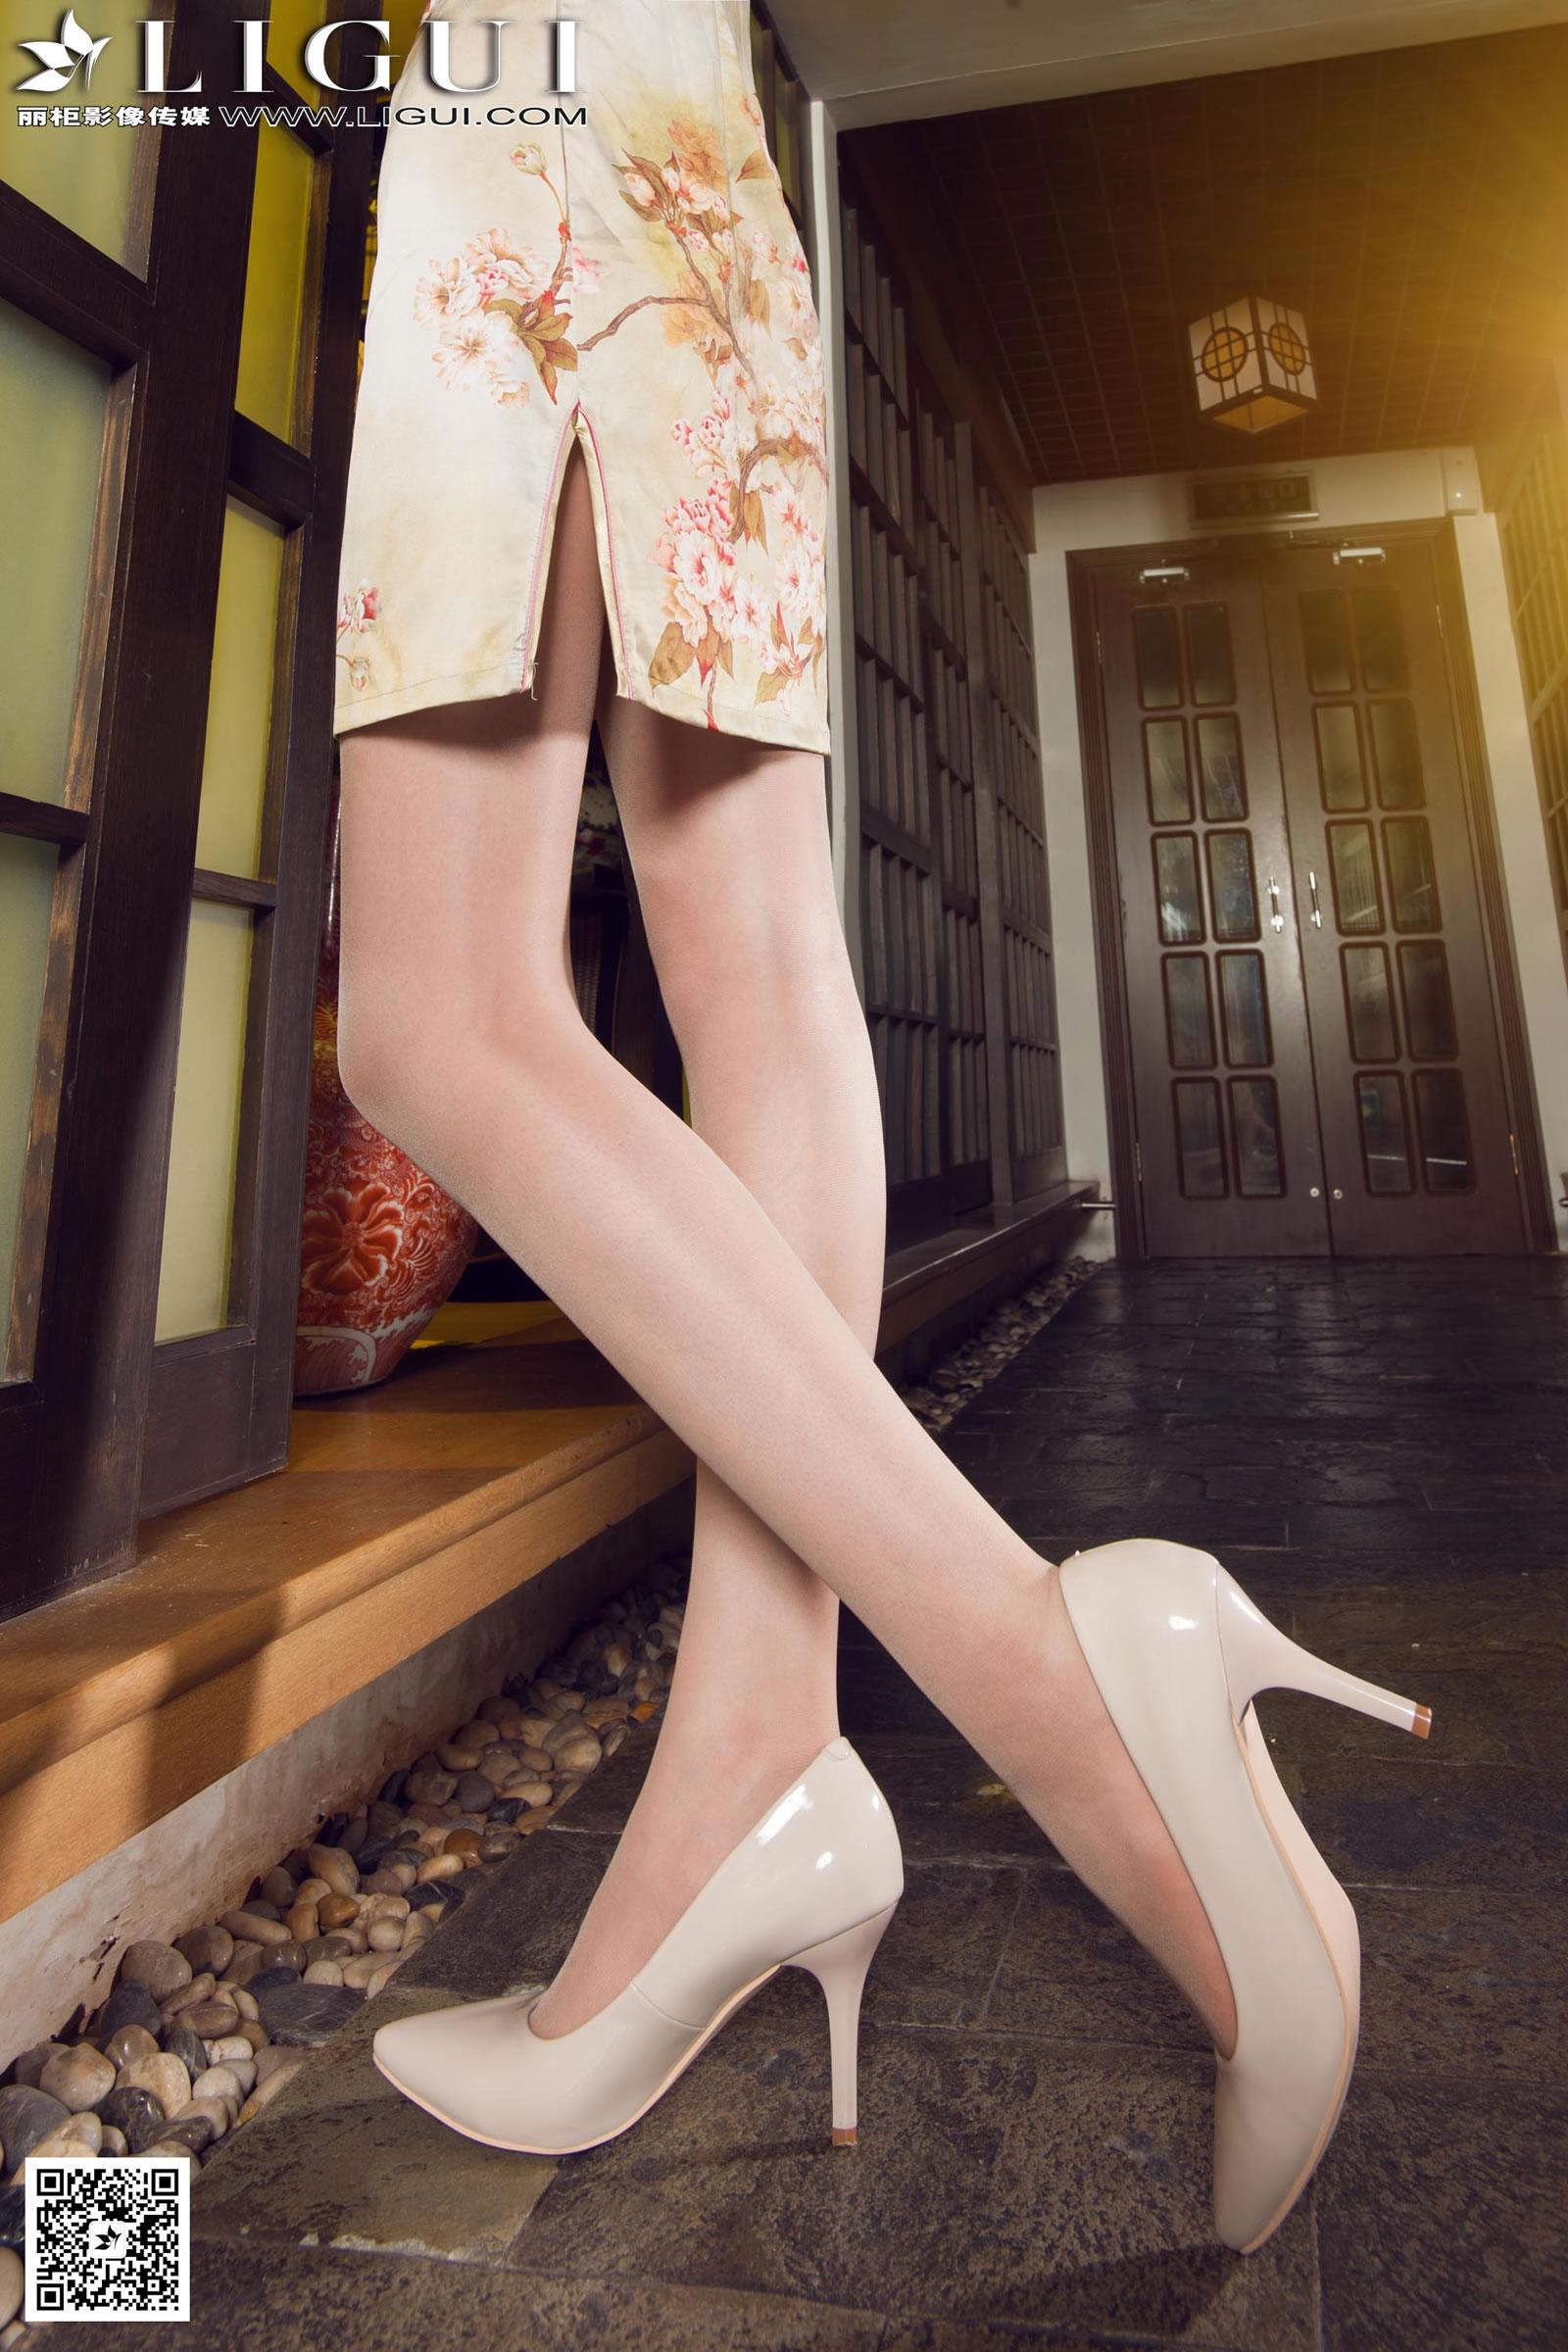 丽柜 Model AMY黄色旗袍肉色长筒丝袜与米色高跟美腿写真,丽柜 Model AMY黄色旗袍肉色长筒丝袜与米色高跟美腿写真